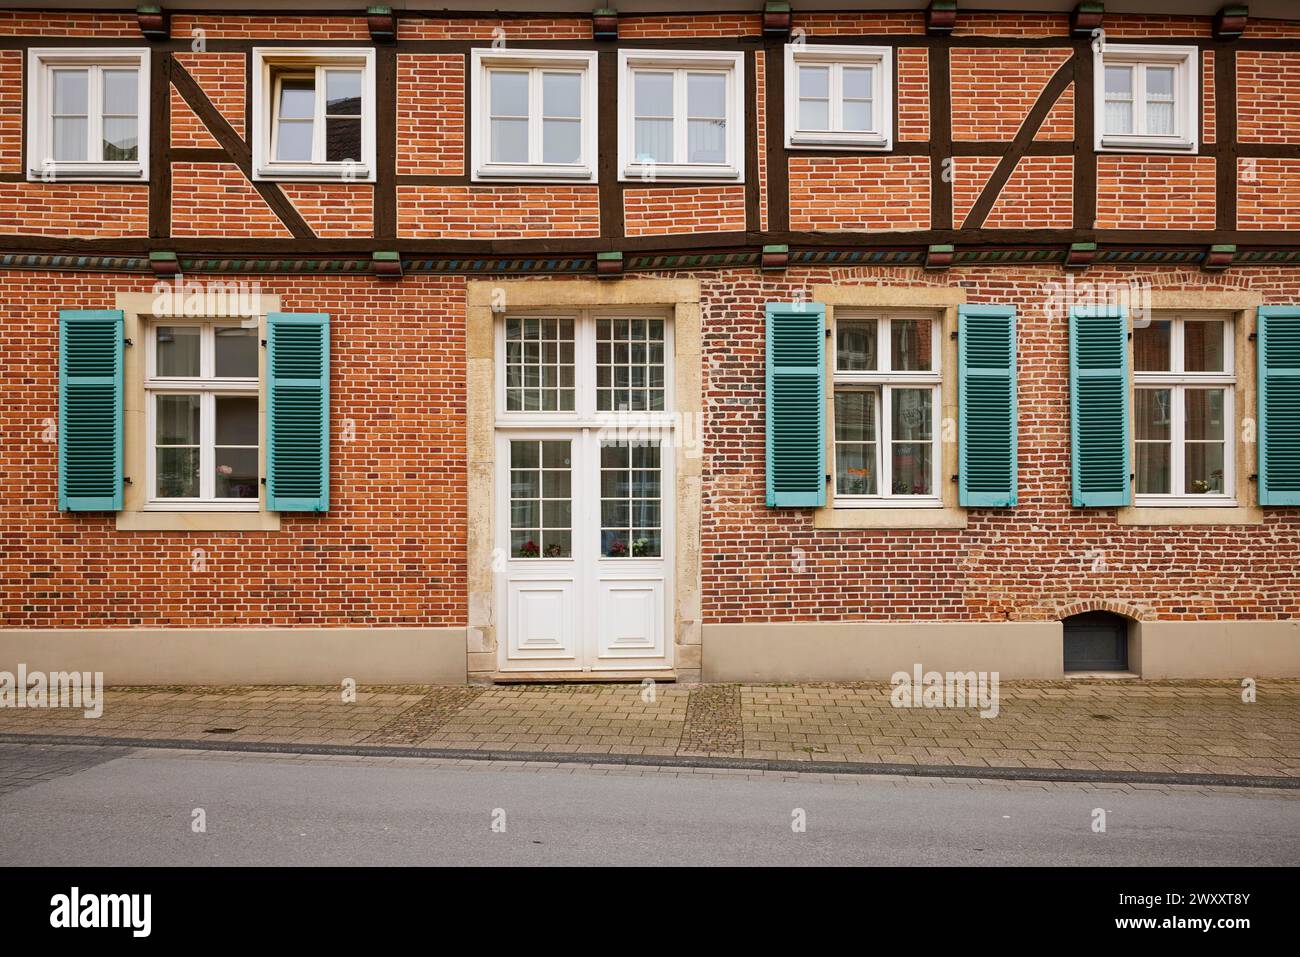 Façade d'une maison en briques à colombages avec des fenêtres blanches, une puissante porte d'entrée et des volets bleu-vert à Warendorf, quartier Warendorf, Nord Banque D'Images